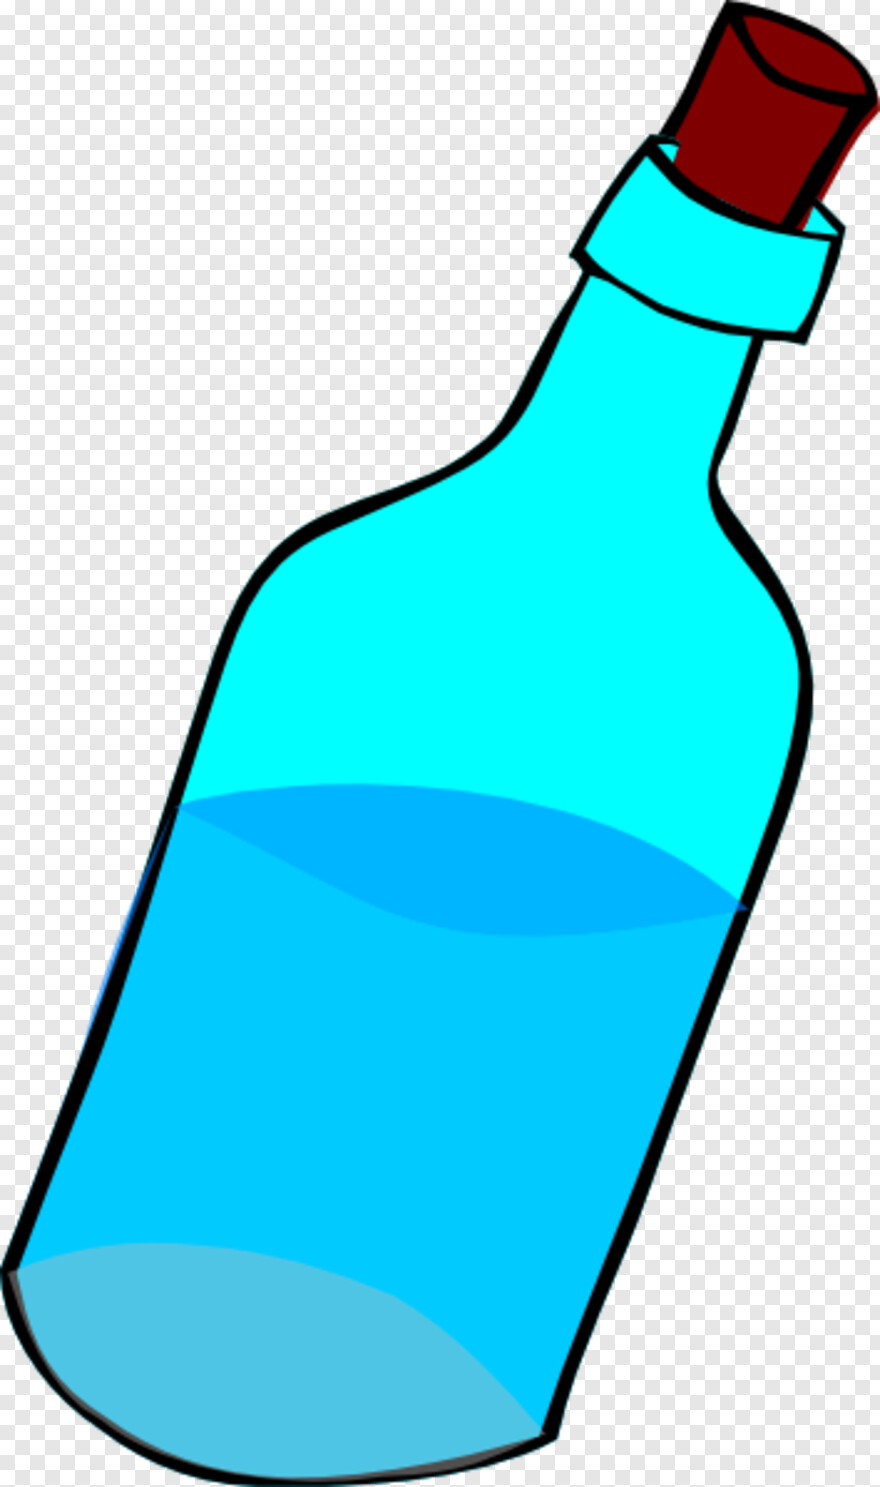 water-bottle # 326406